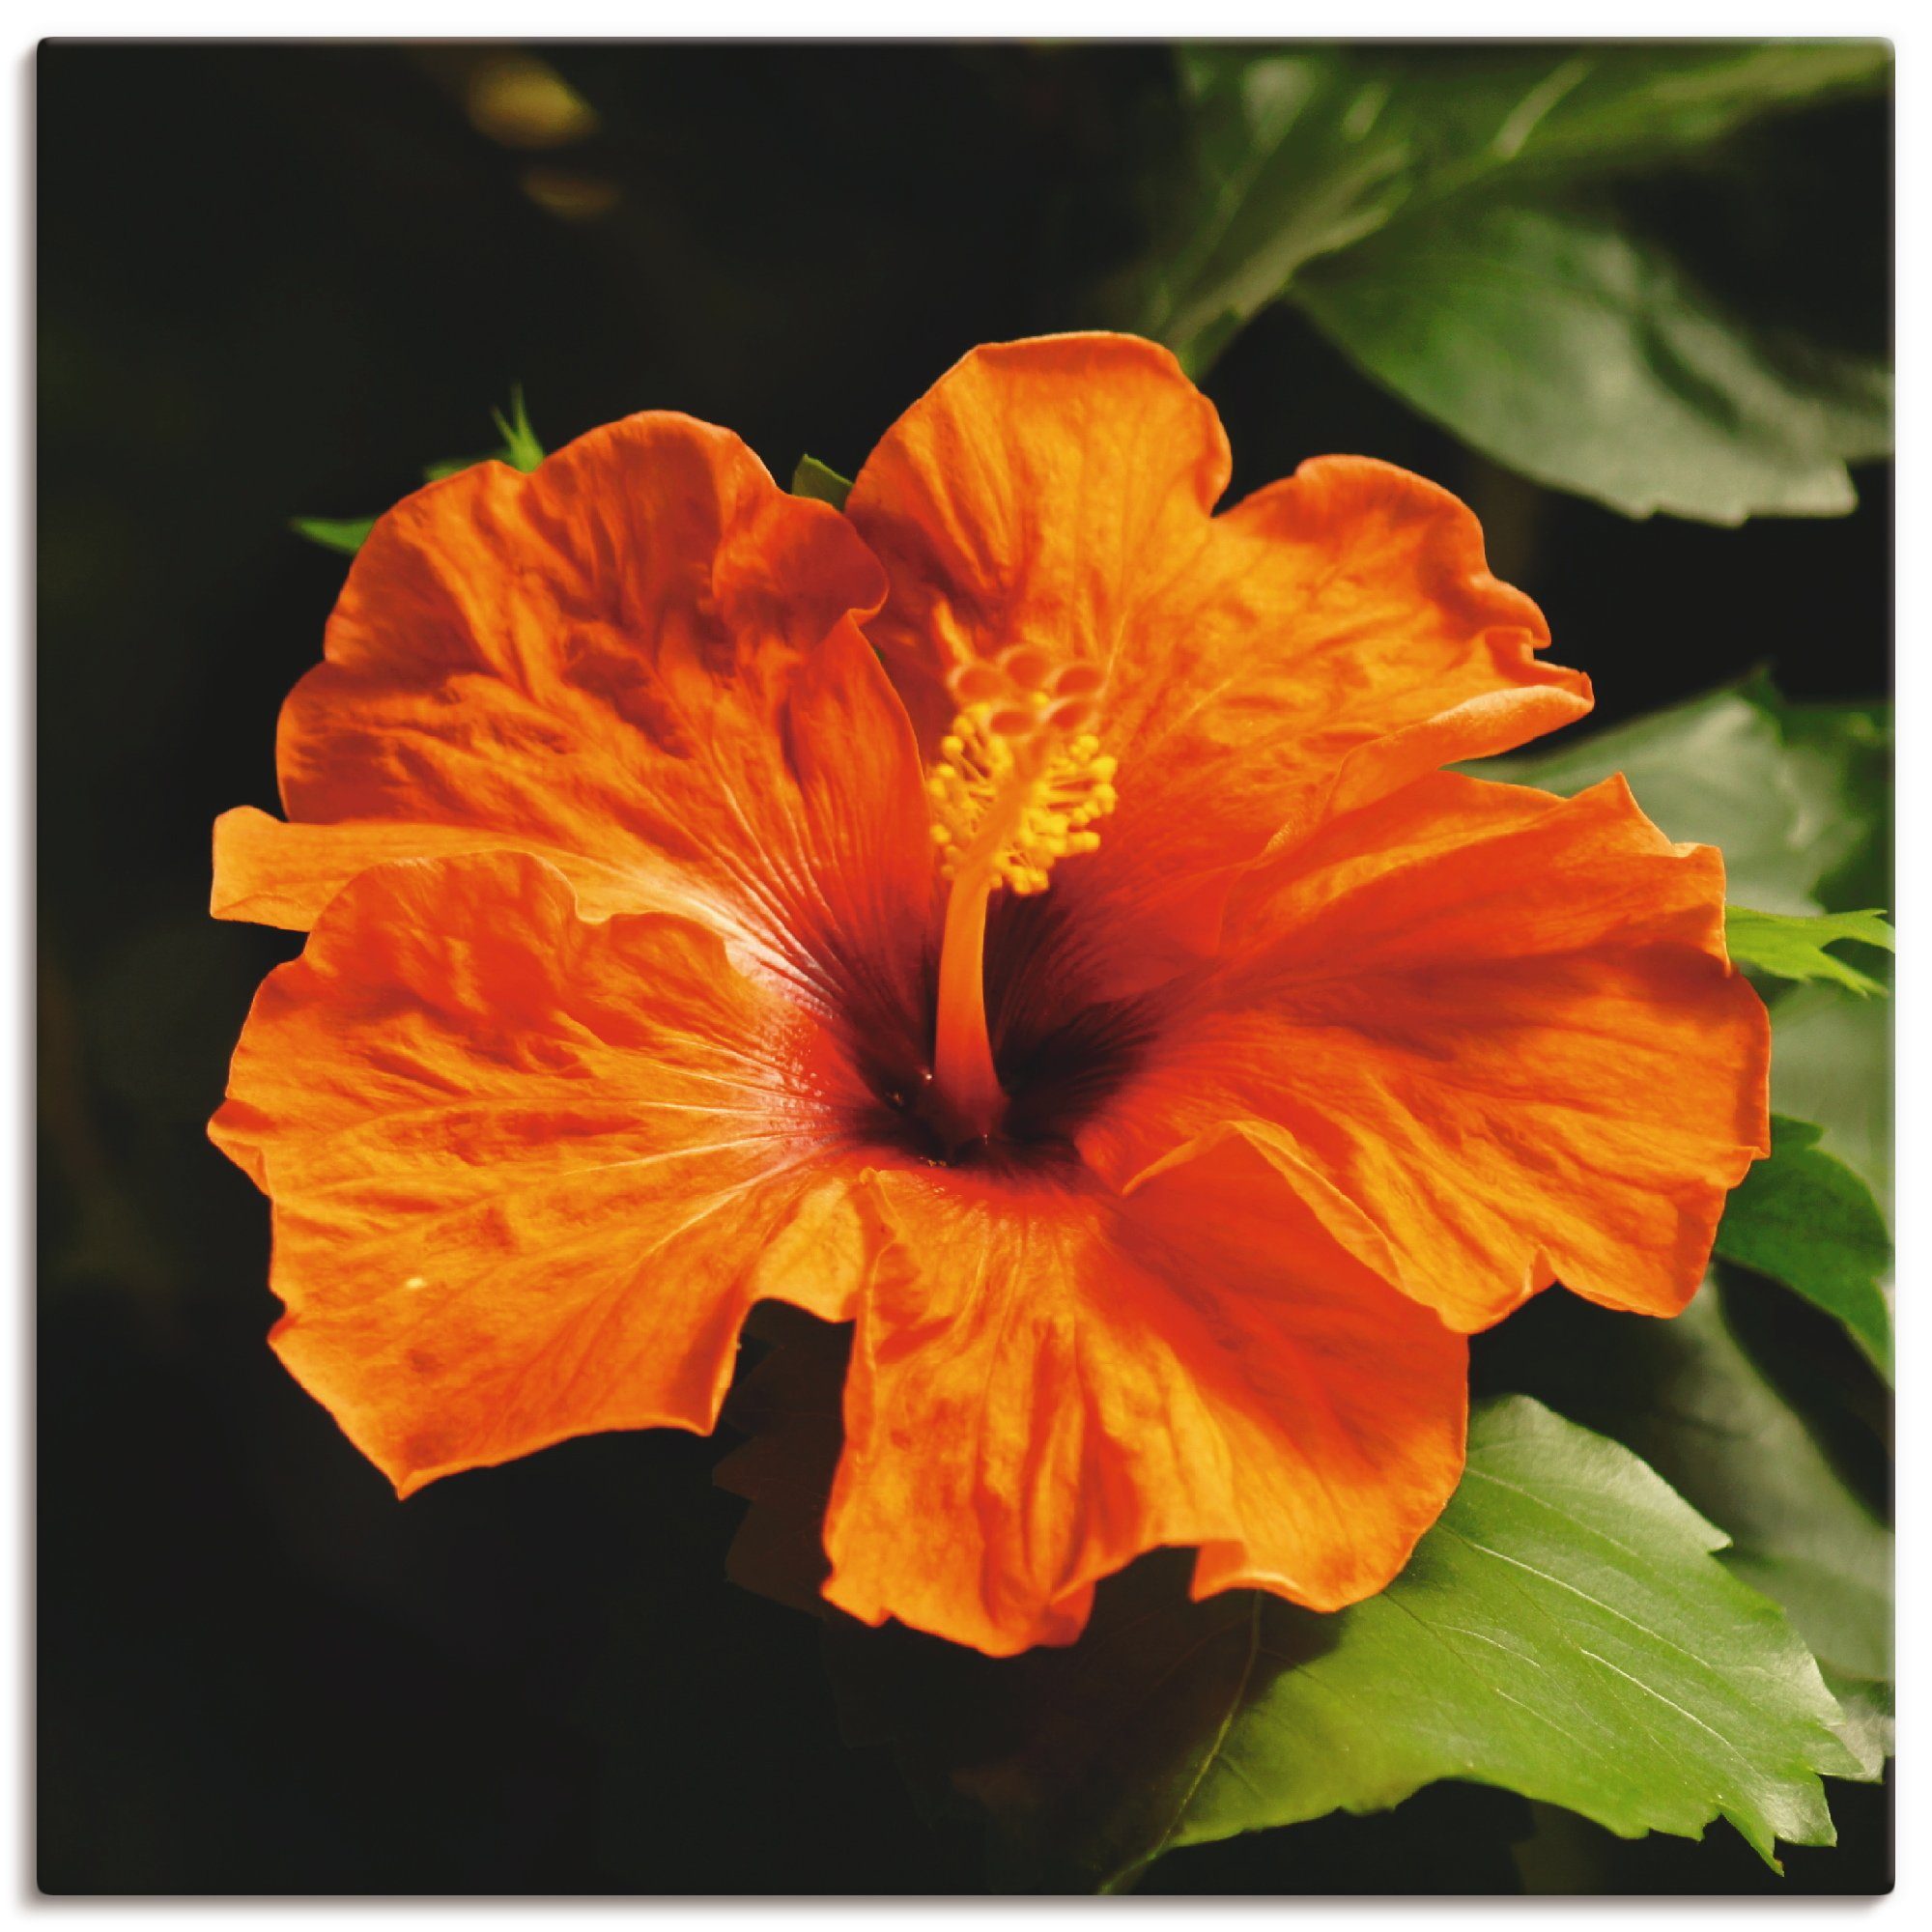 Artland Artprint Oranje hibiscus in vele afmetingen & productsoorten - artprint van aluminium / artprint voor buiten, artprint op linnen, poster, muursticker / wandfolie ook geschi